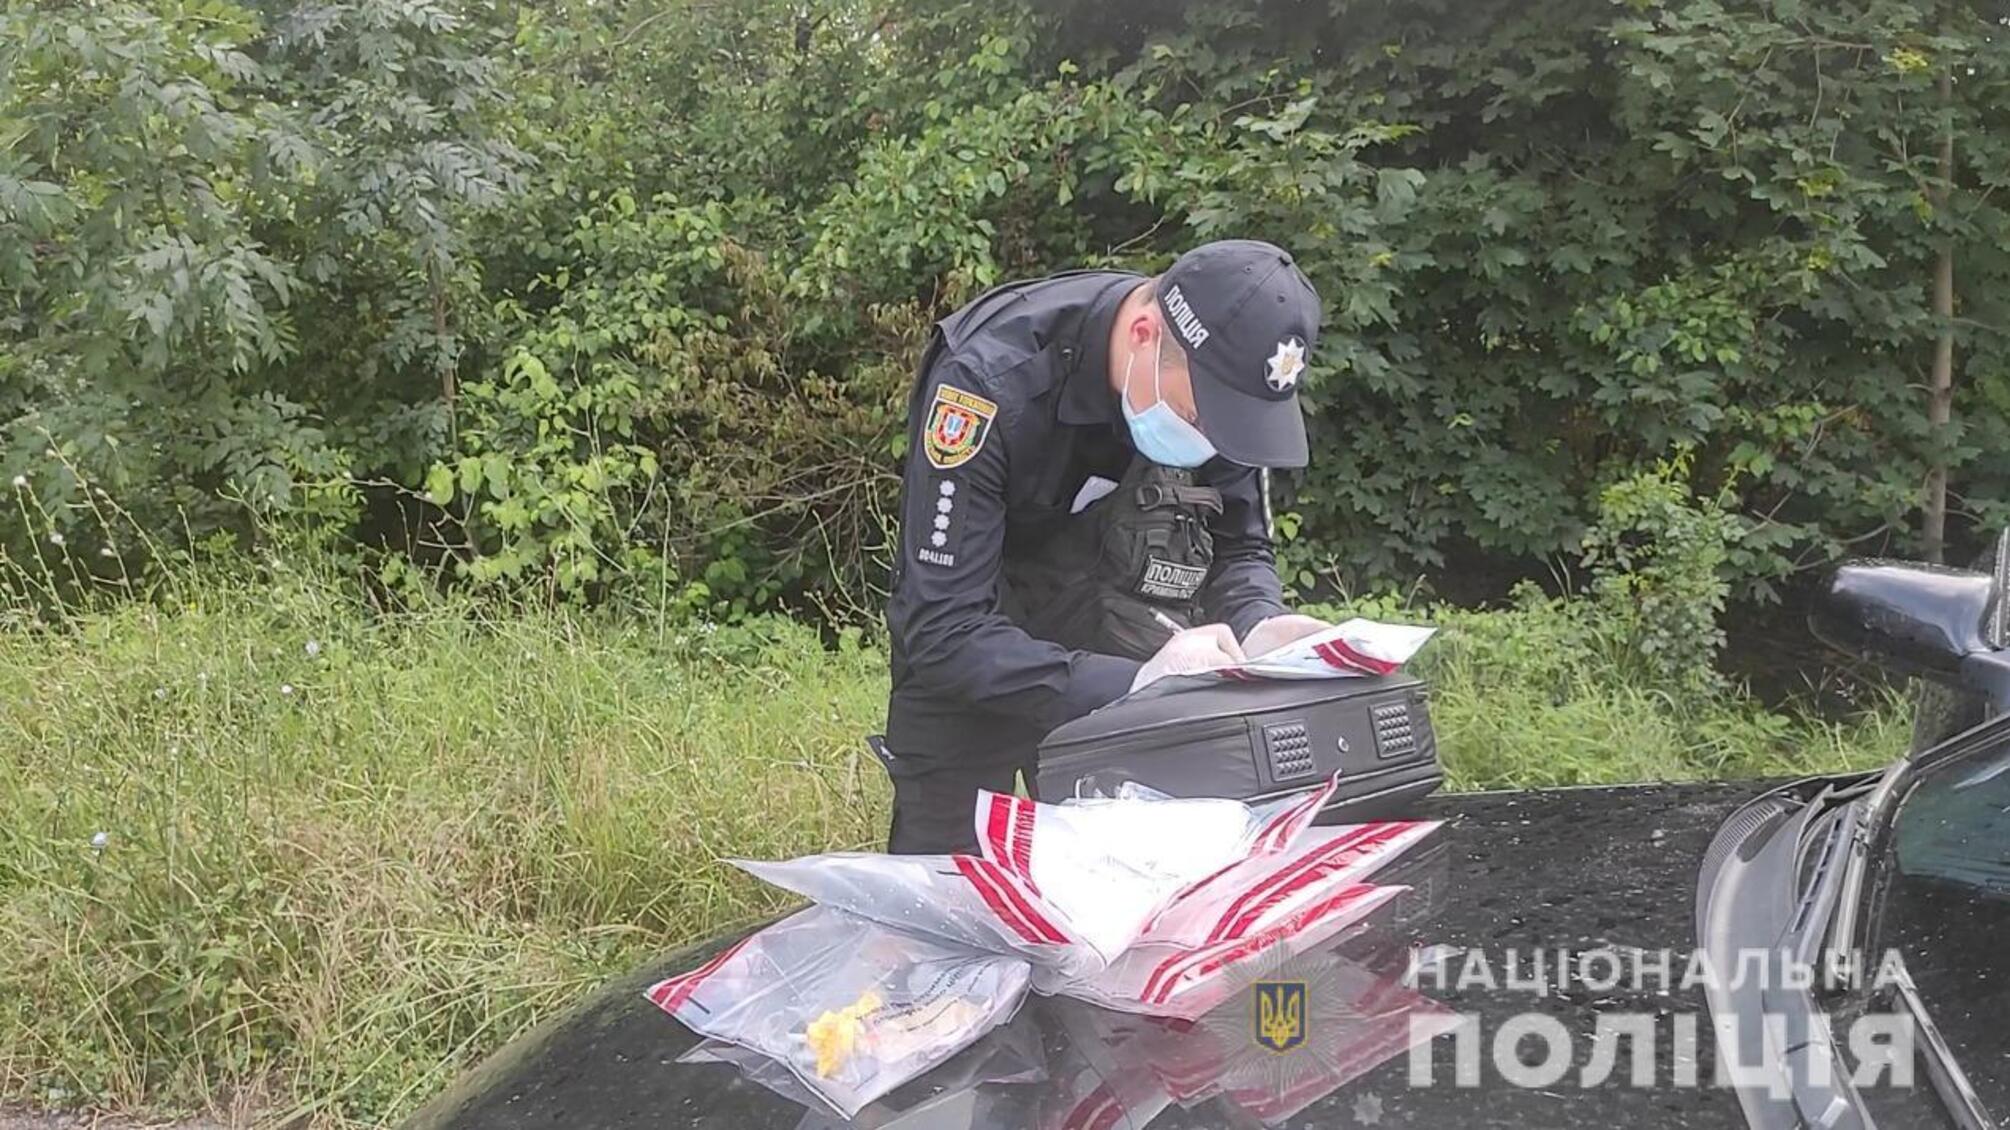 Правоохоронці затримали групу молодих людей, які займалися розповсюдженням наркотиків у курортних зонах Білгород-Дністровського району на Одещині